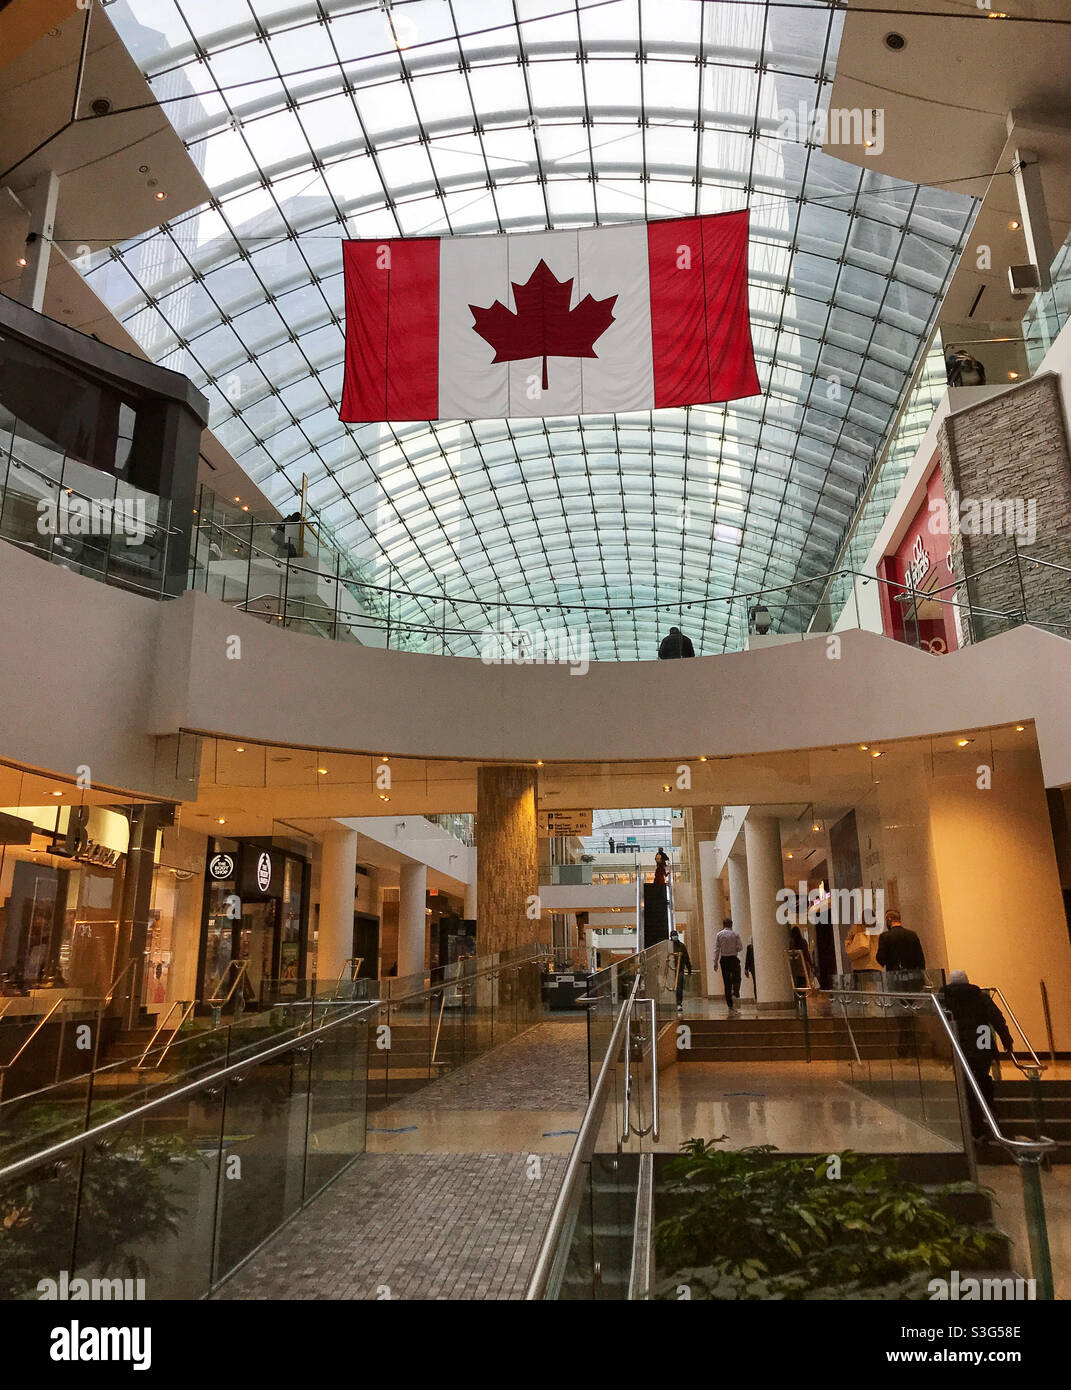 Drapeau canadien suspendu au plafond en verre du centre commercial Core. Centre-ville de Calgary, Alberta, Canada. Banque D'Images